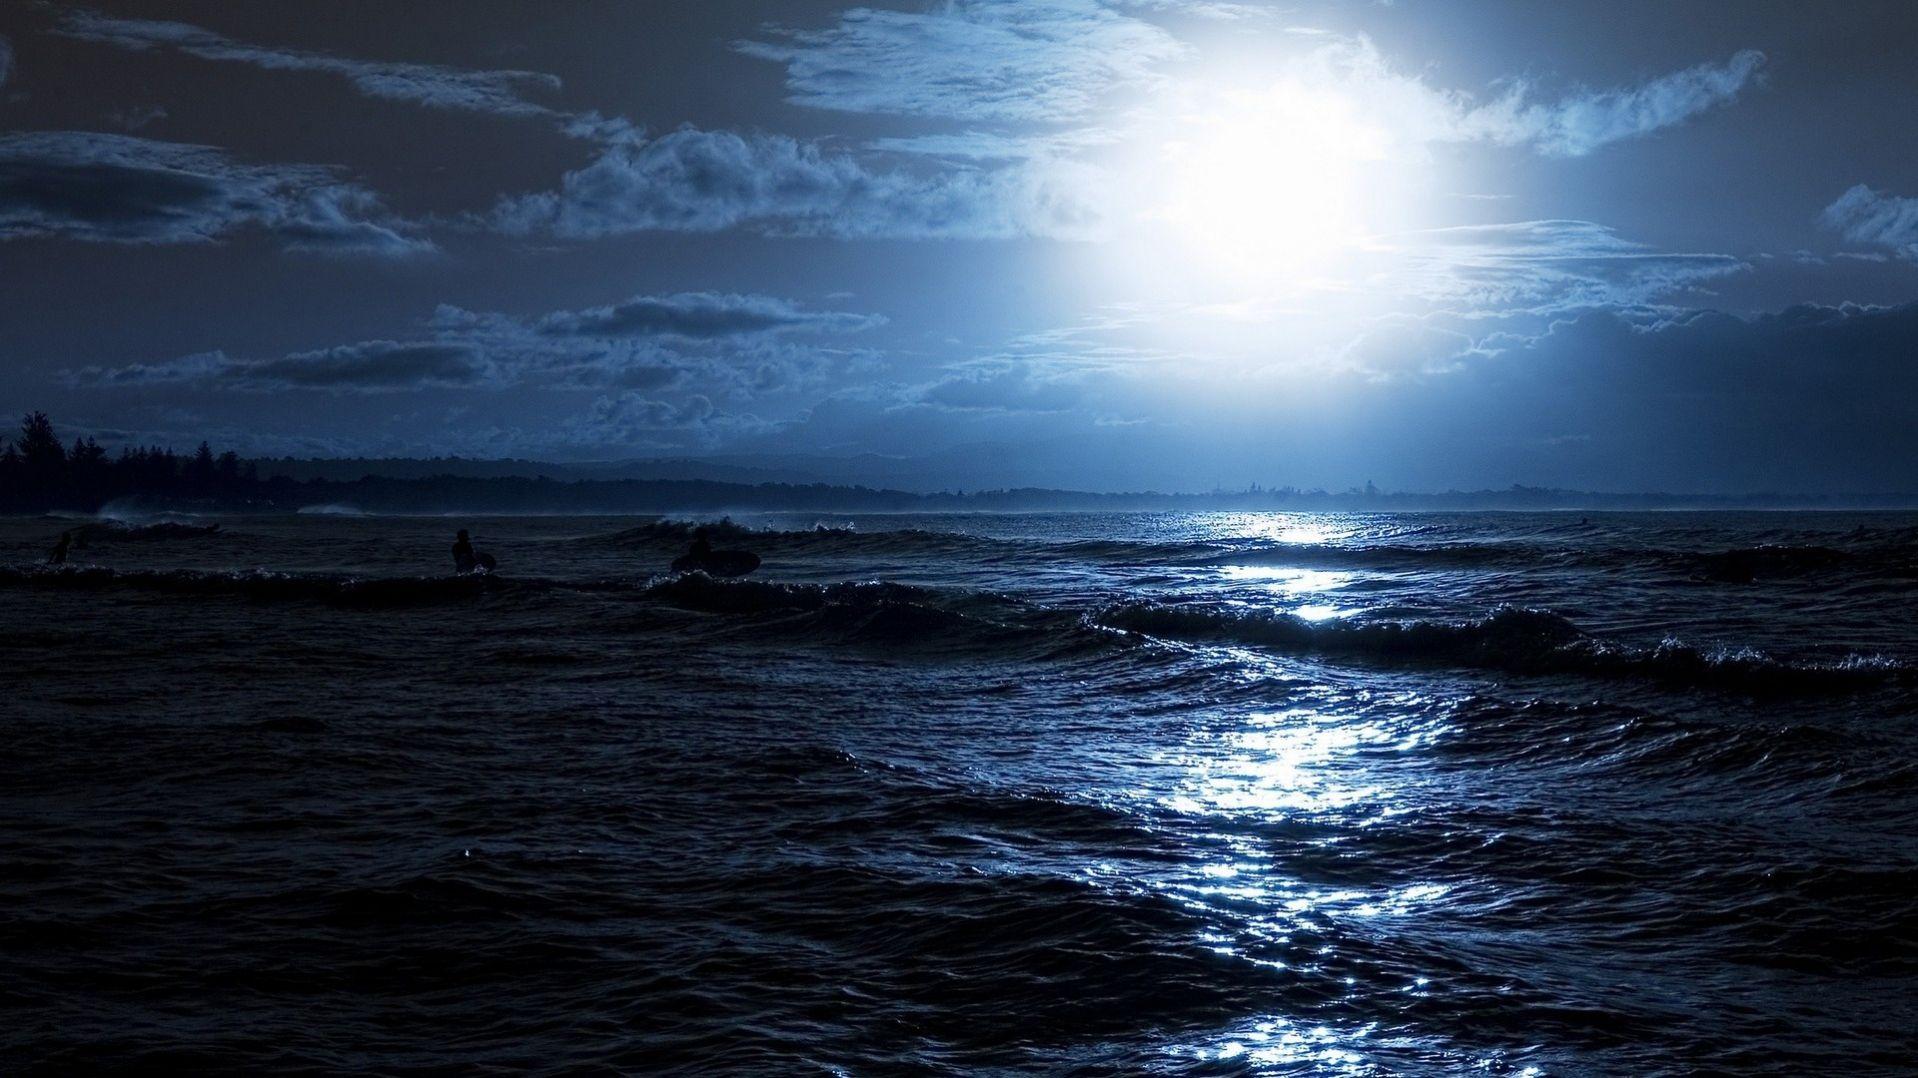 Dark Sea at Night Wallpaper in HD. Ocean at night, Ocean wallpaper, Night sea